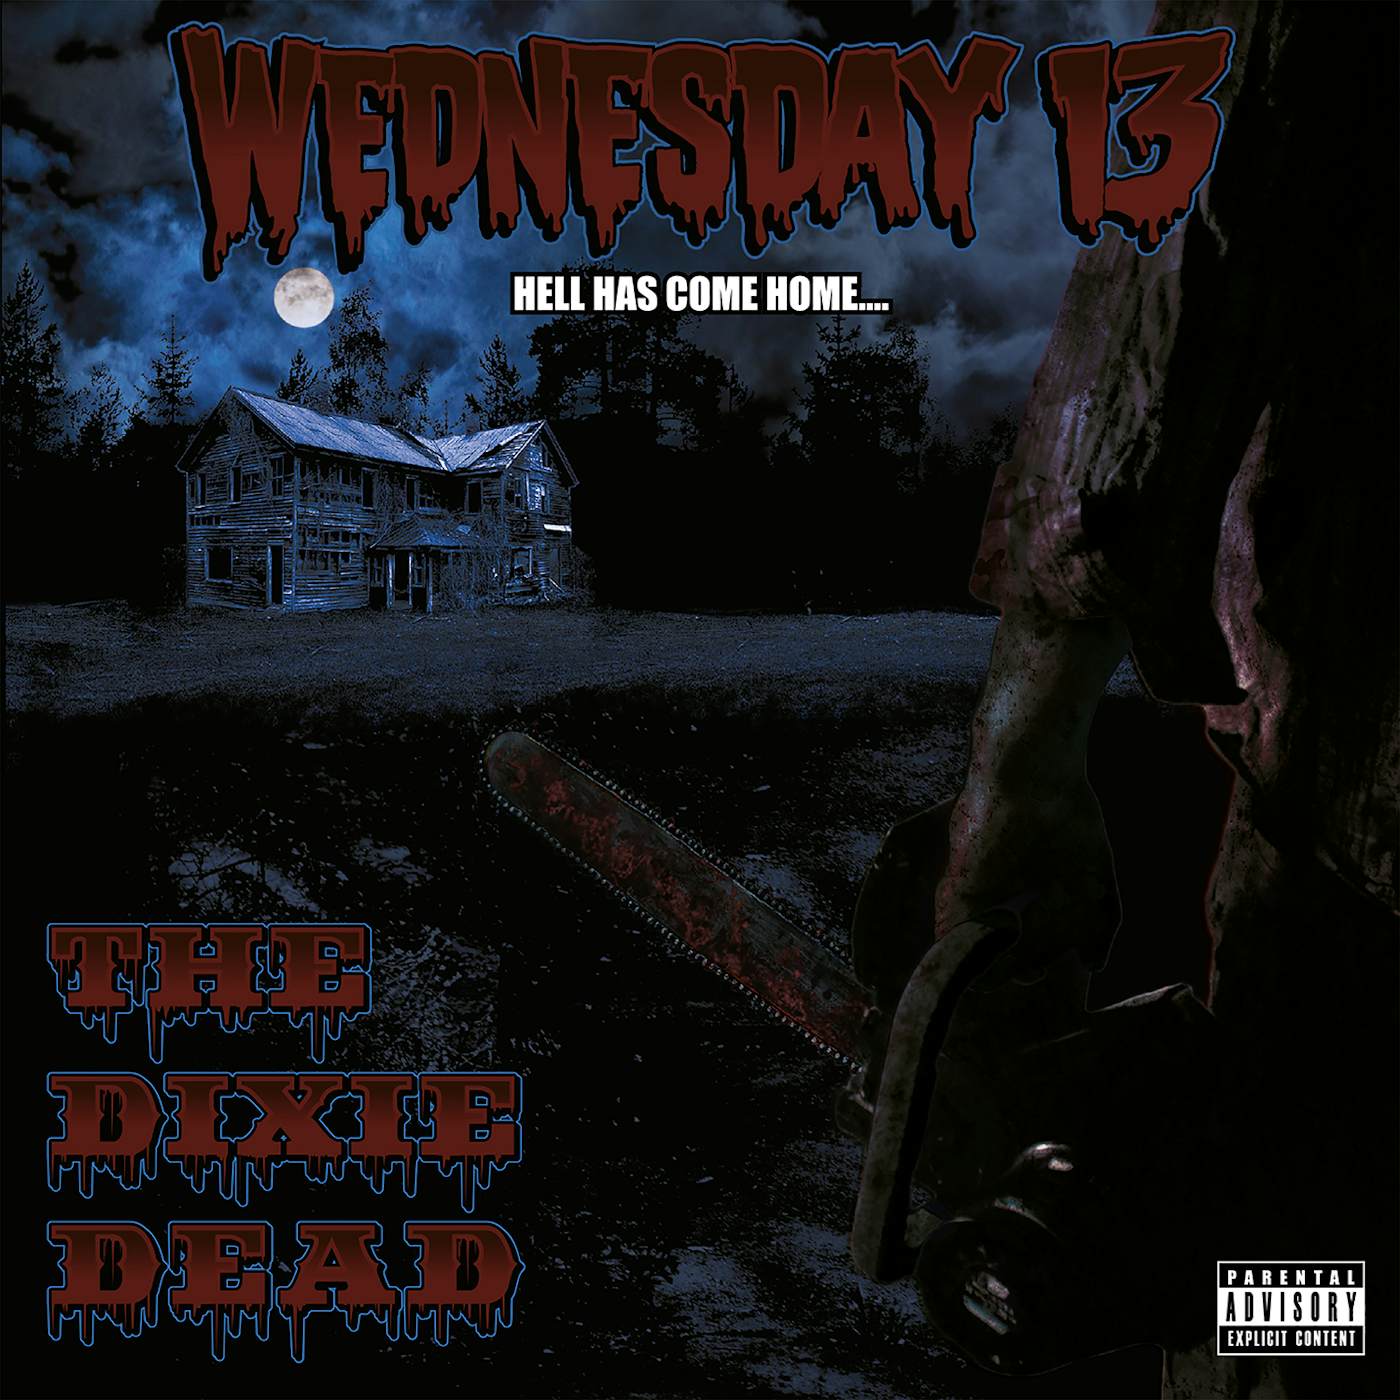 Wednesday 13 DIXIE DEAD Vinyl Record